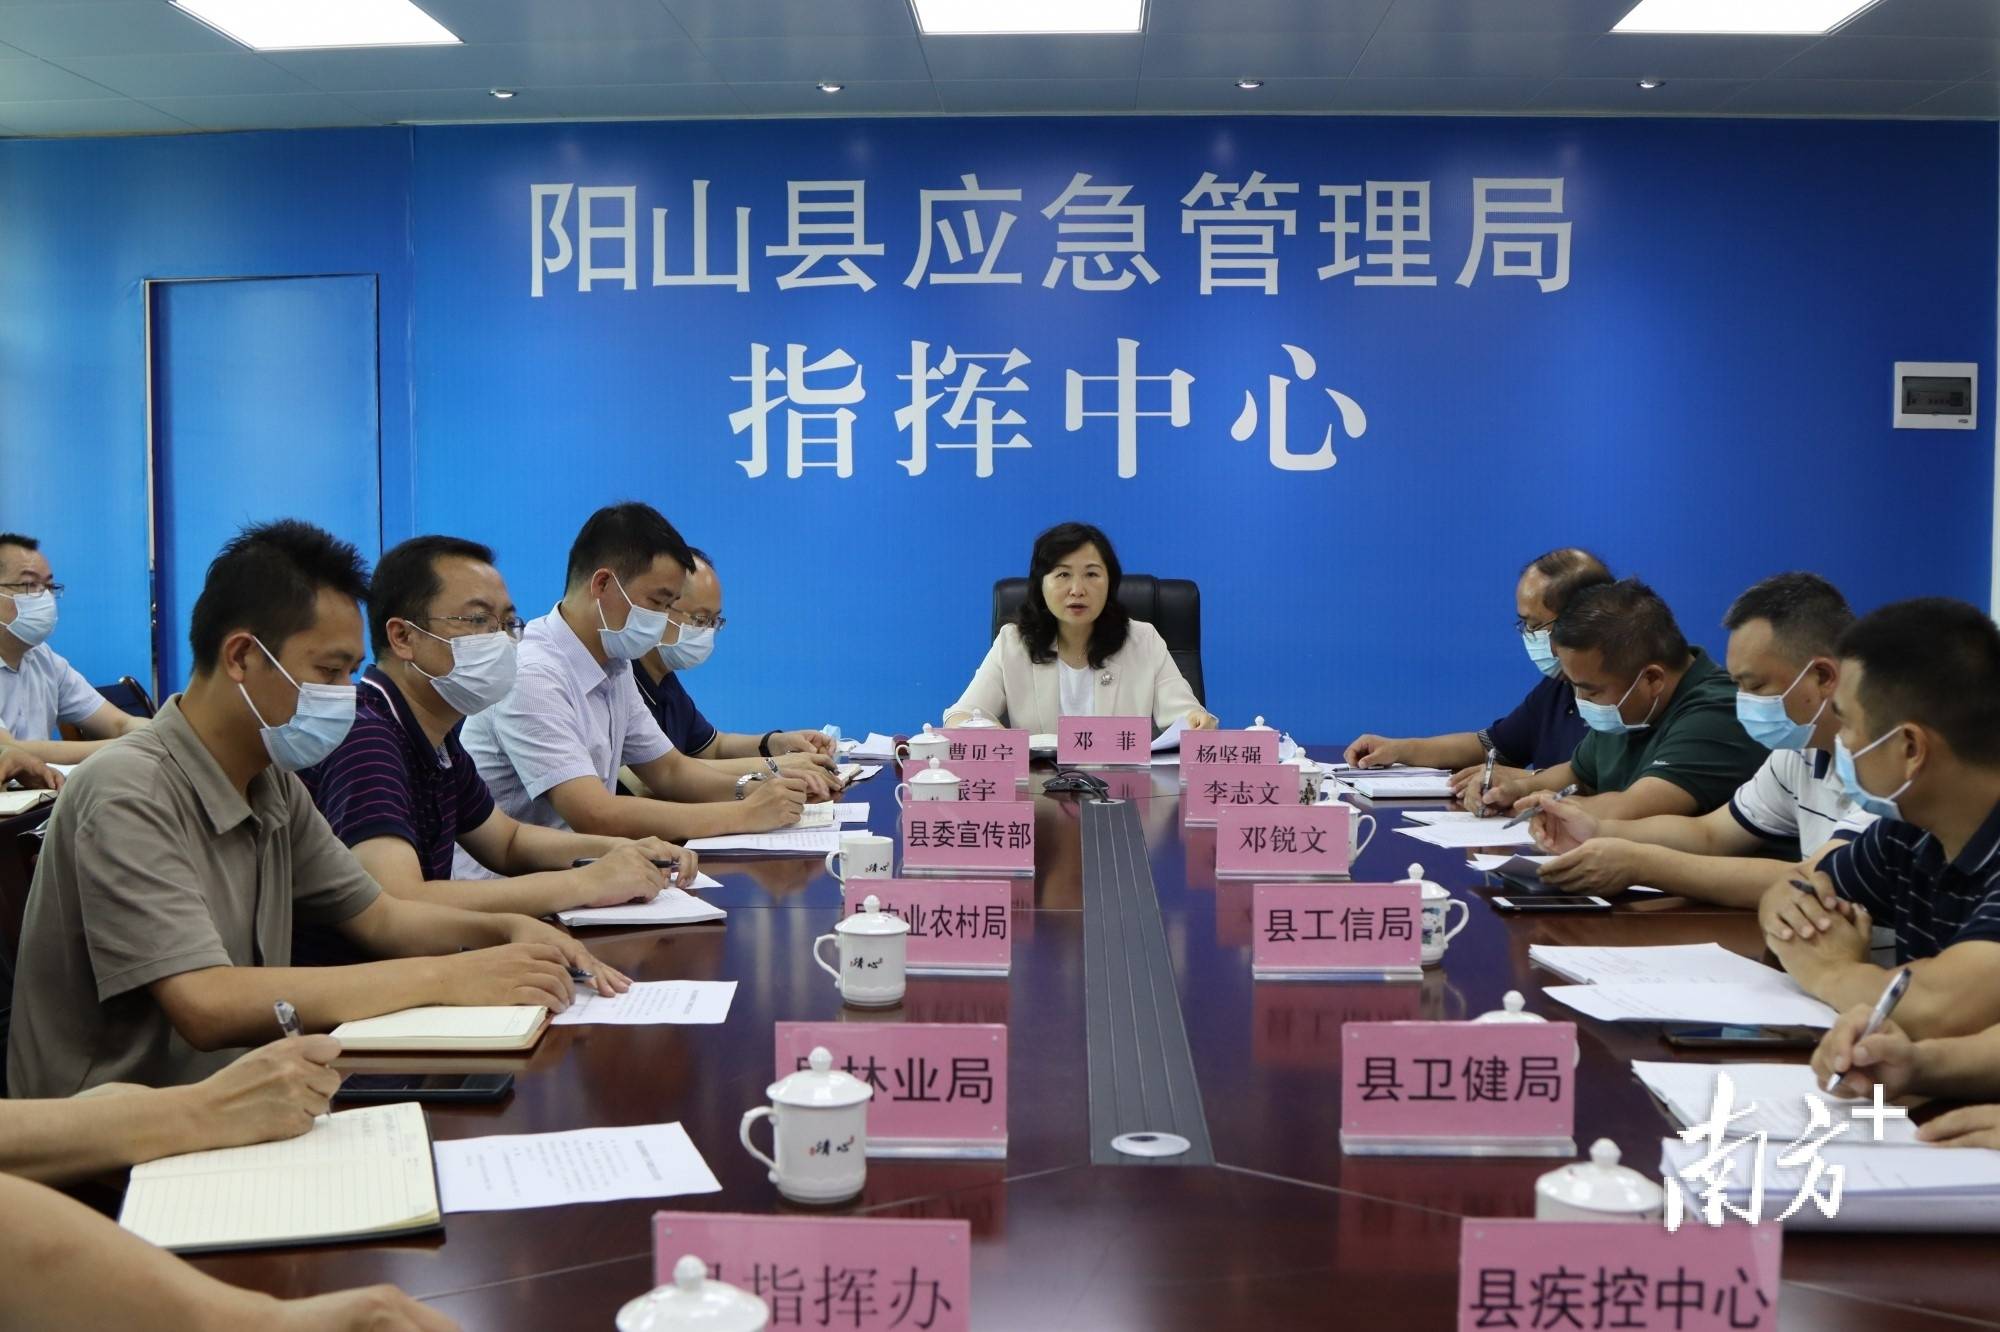 7月15日,阳山县委书记邓菲主持召开全县疫情防控工作调度会